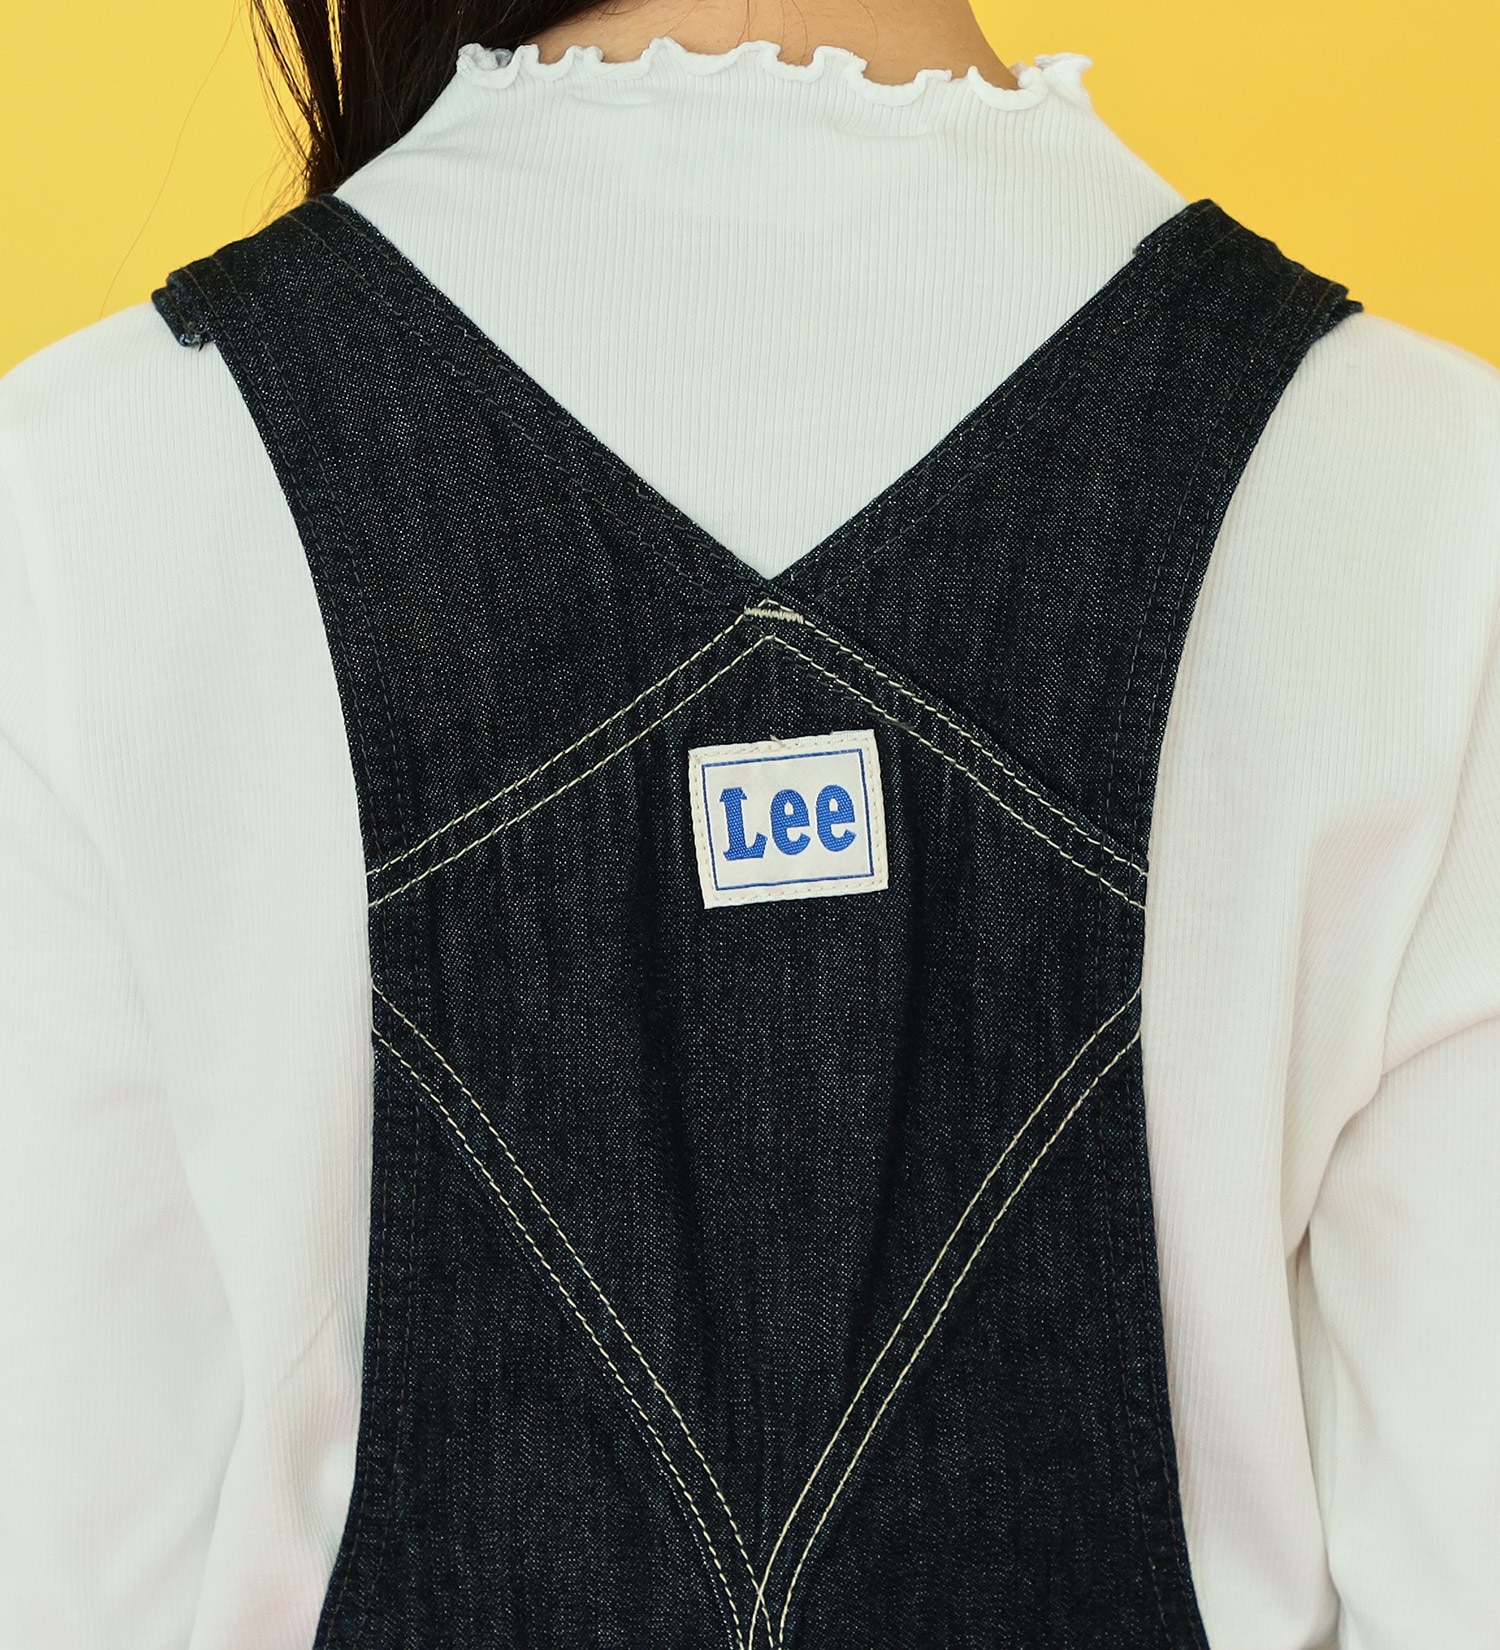 Lee(リー)の【130-160cm】キッズ オーバーオール|オールインワン/サロペット/オーバーオール/キッズ|インディゴブルー